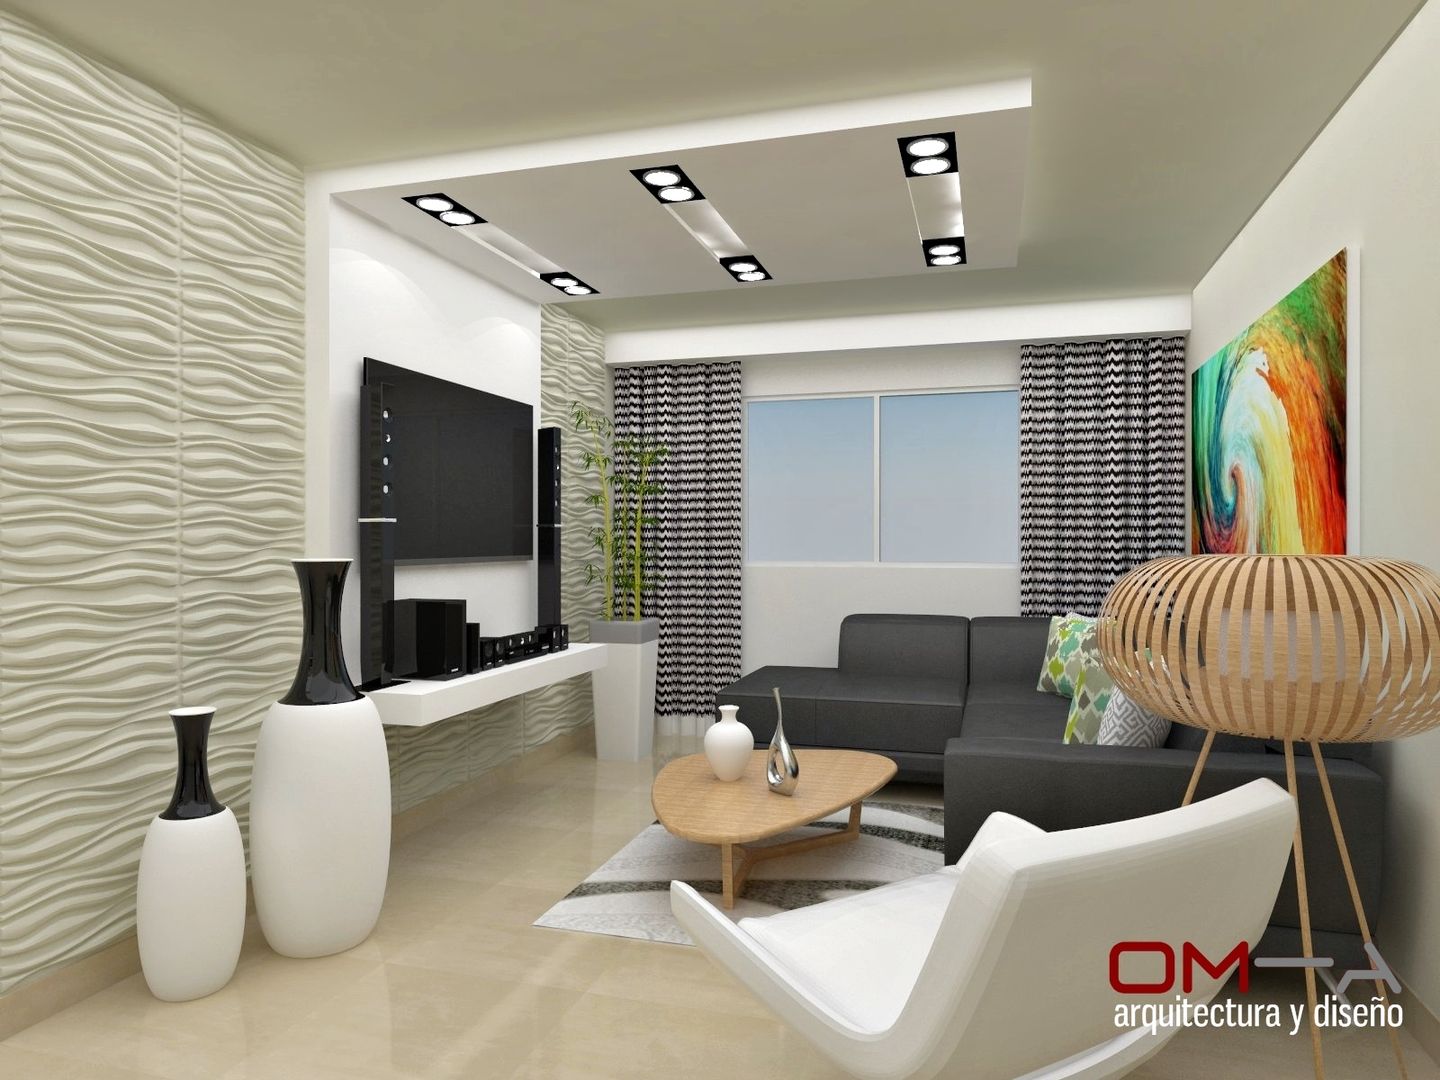 Diseño interior en apartamento , om-a arquitectura y diseño om-a arquitectura y diseño Salon moderne